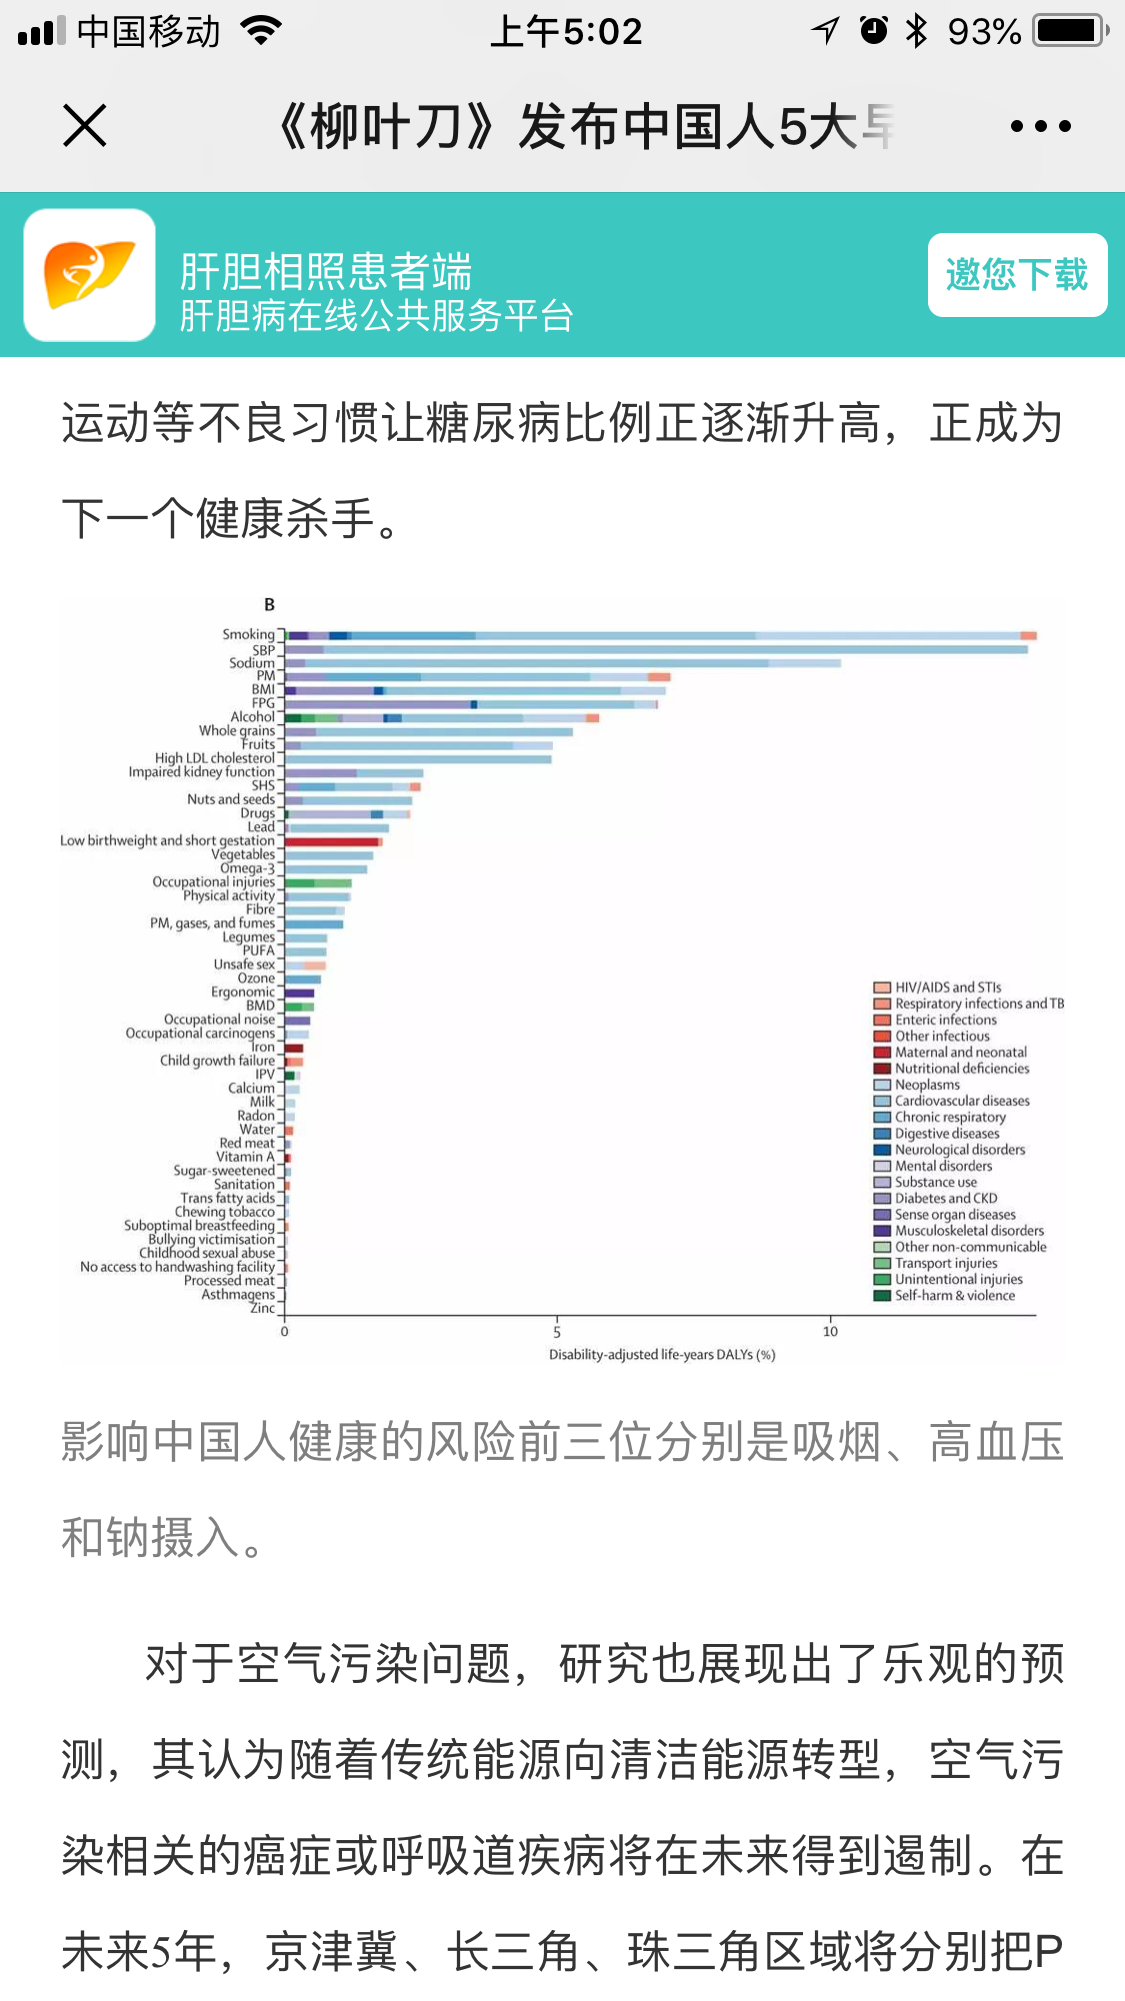 《柳叶刀》发布中国人5大早死原因,肝癌患病率远超预期 